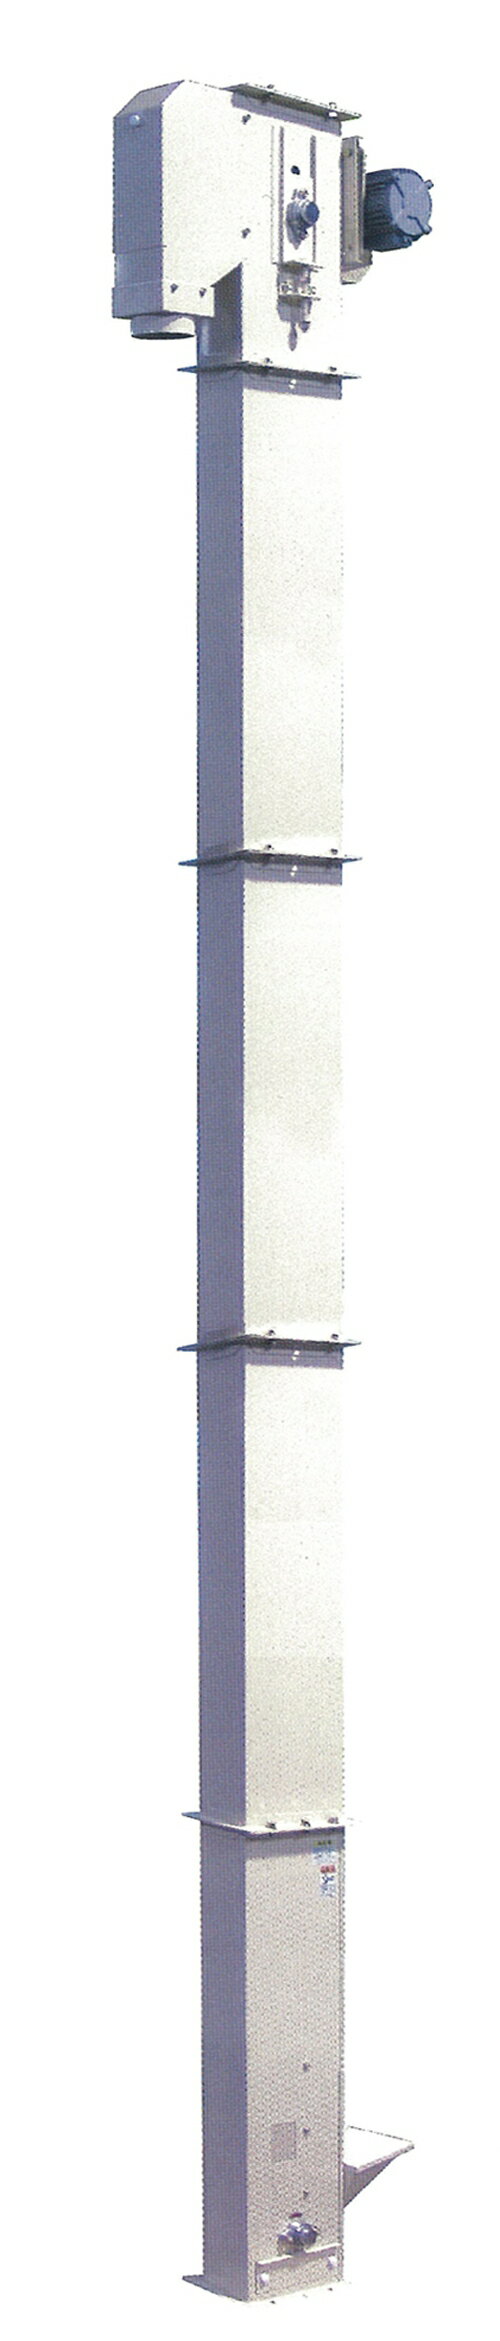 長尺昇降機 イリノ ロングバケット600シリーズ LB1-651D 白米 玄米 豆 搬送 搬送用 業務用 基本【59-639】